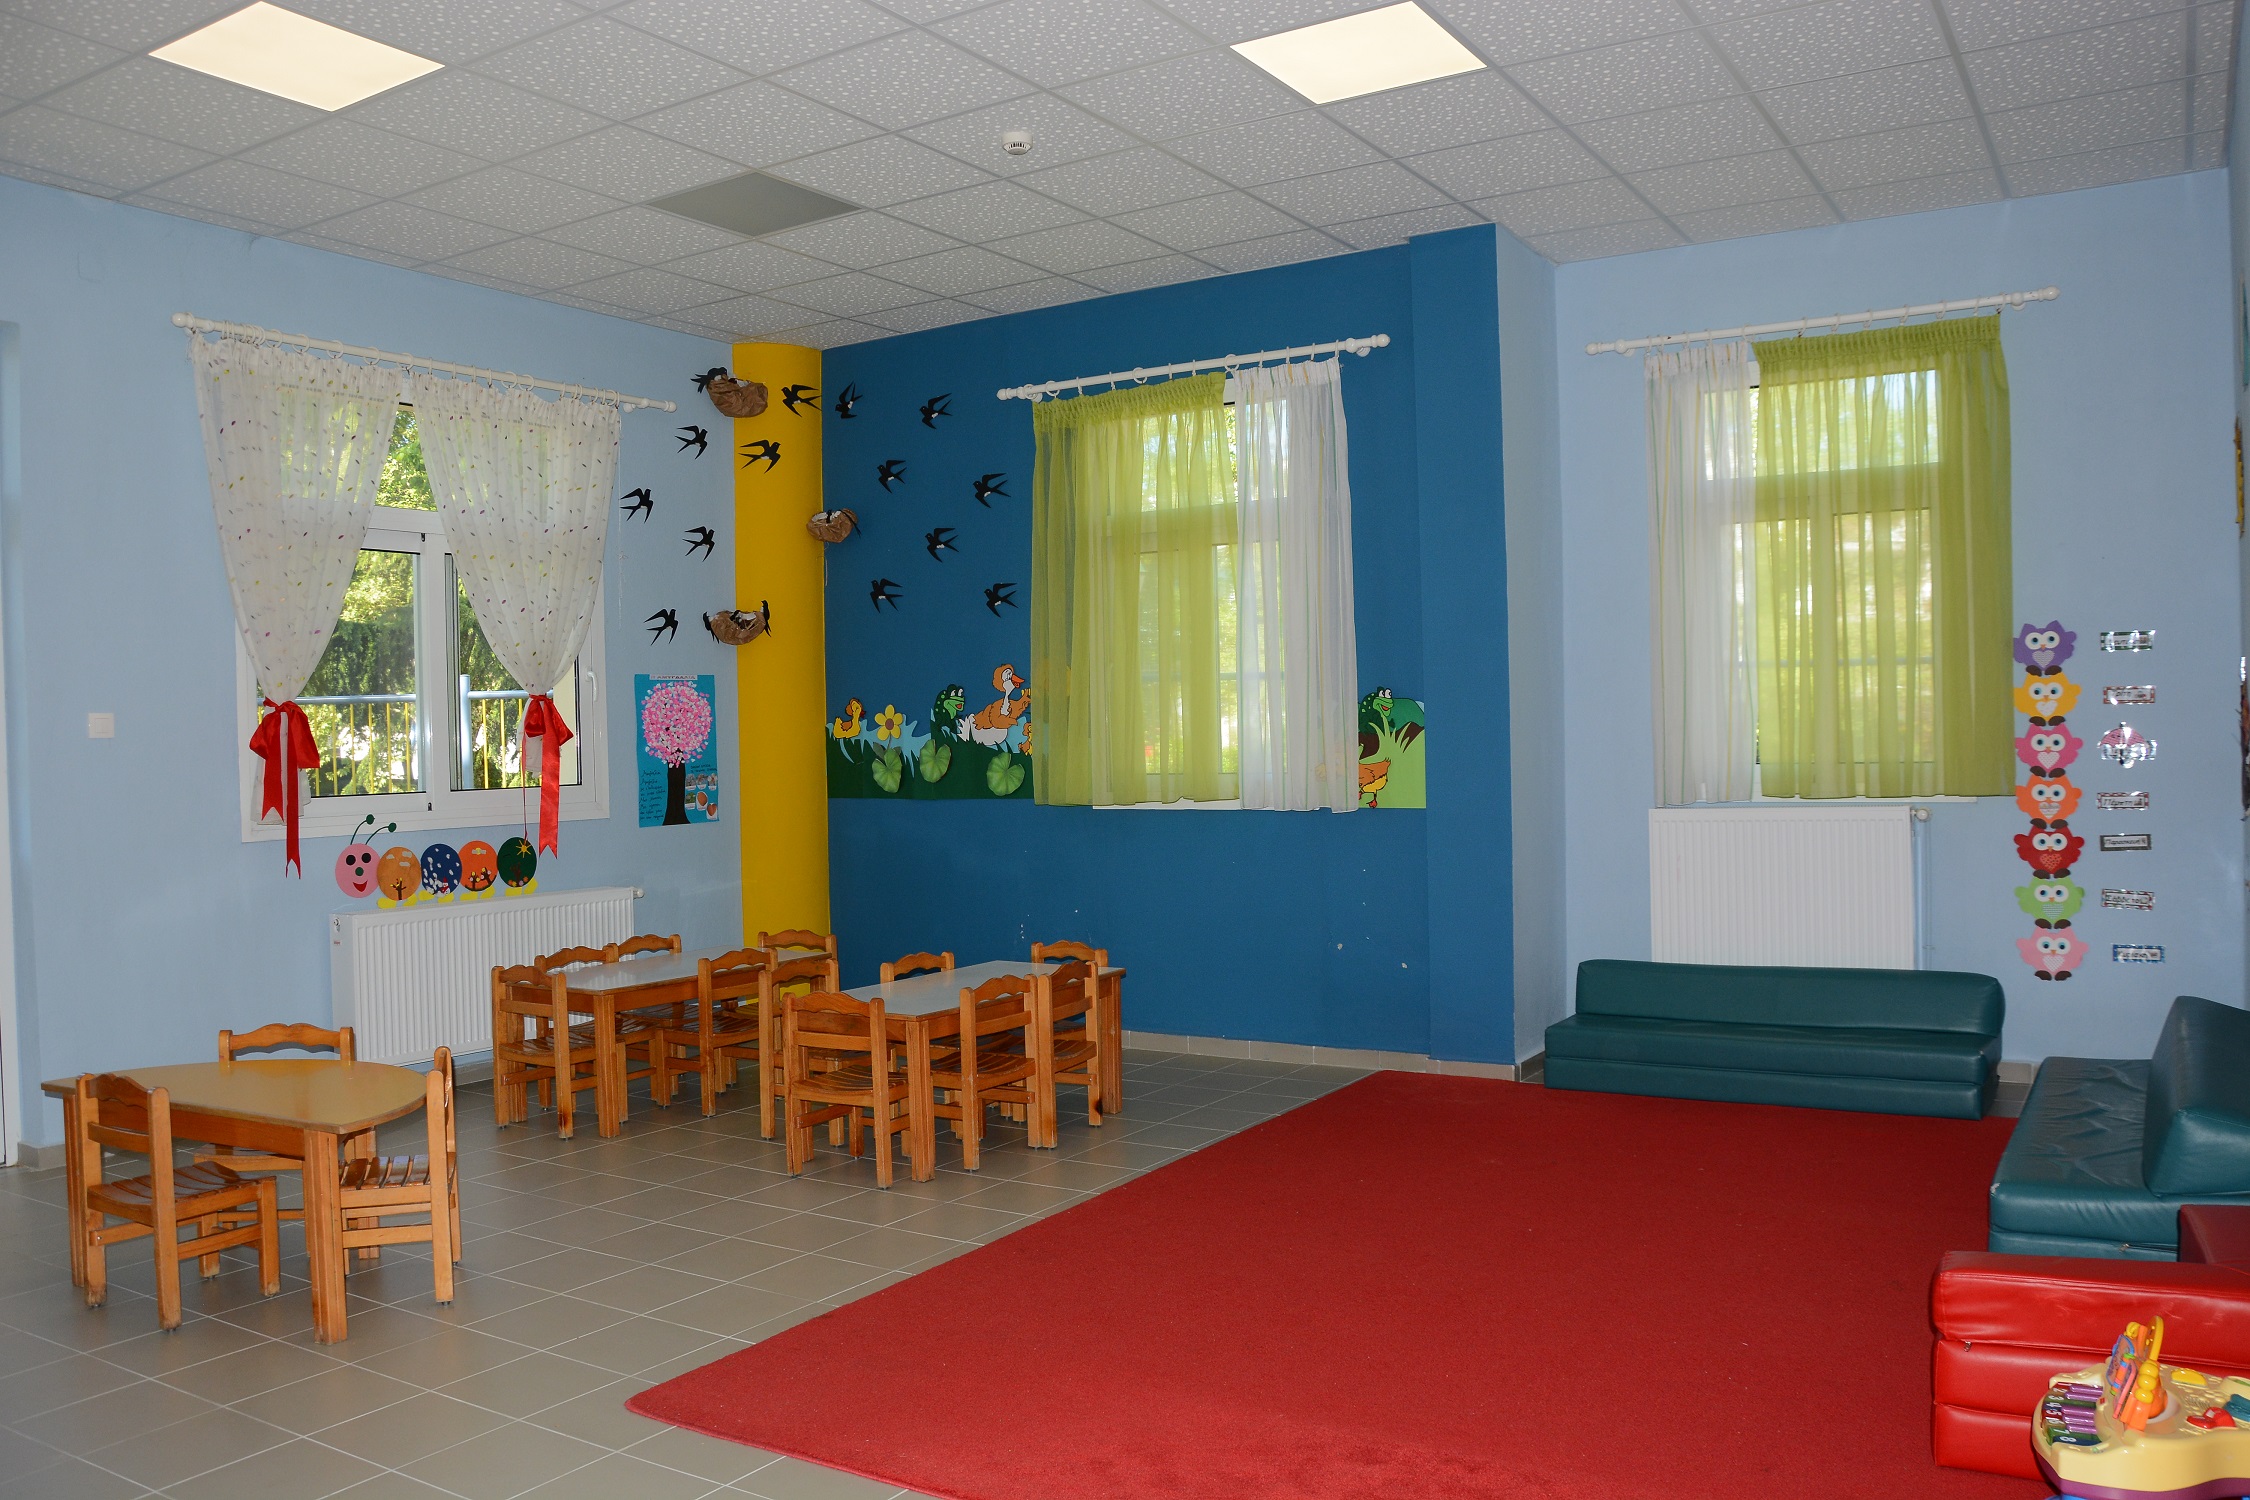 Δήμος Ελασσόνας: Έναρξη υποβολής αιτήσεων voucher παιδικών σταθμών 2023-2024